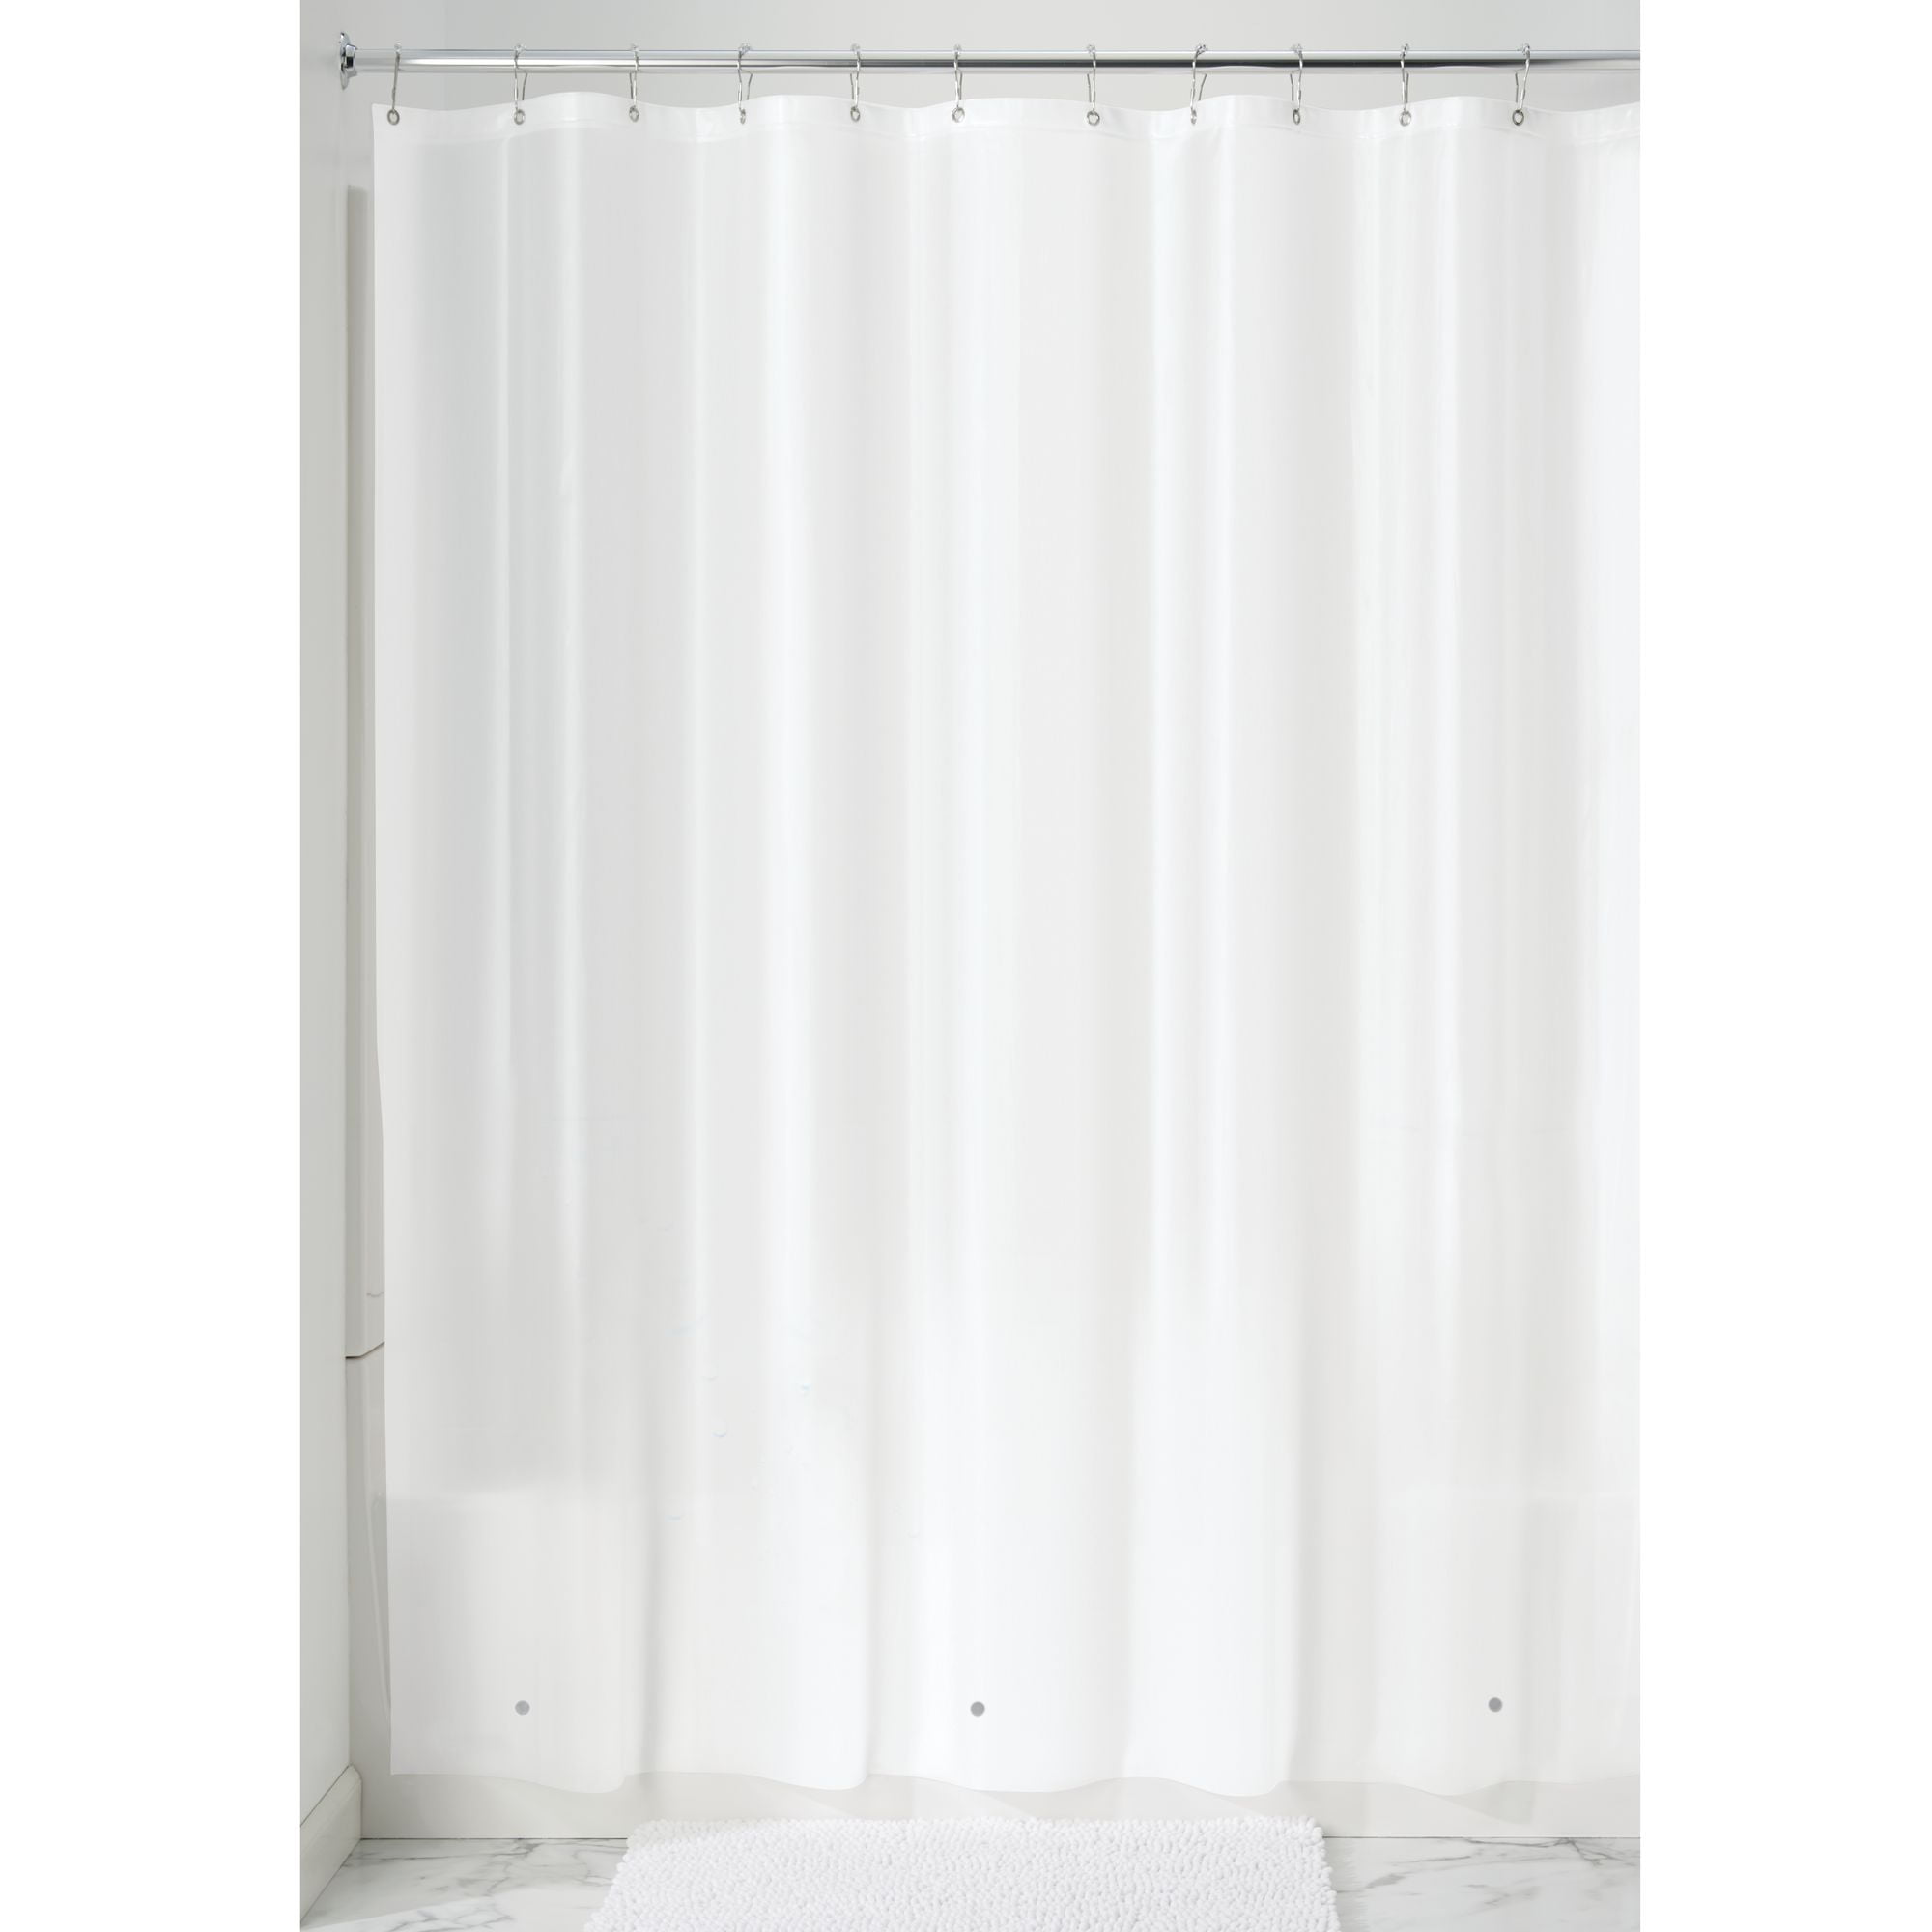 Details about   Shower Curtain 180x200cm 180x180cm Anti Mold Bath Curtain Curtain PEVA ang Vorhang PEVA data-mtsrclang=en-US href=# onclick=return false; 							show original title 